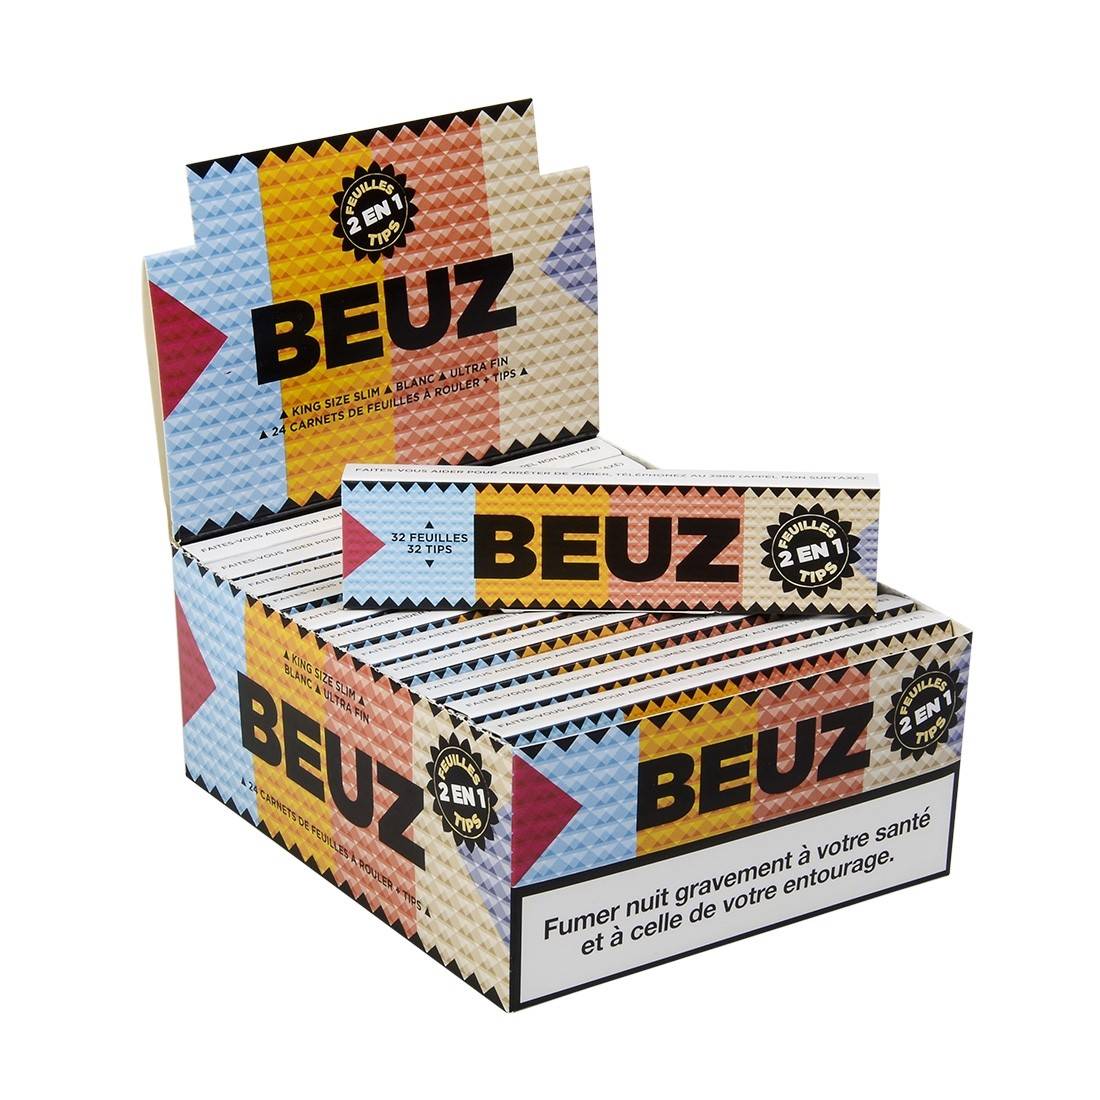 Feuille à rouler Beuz Brown Slim 2 en 1, disponible sur S Factory !